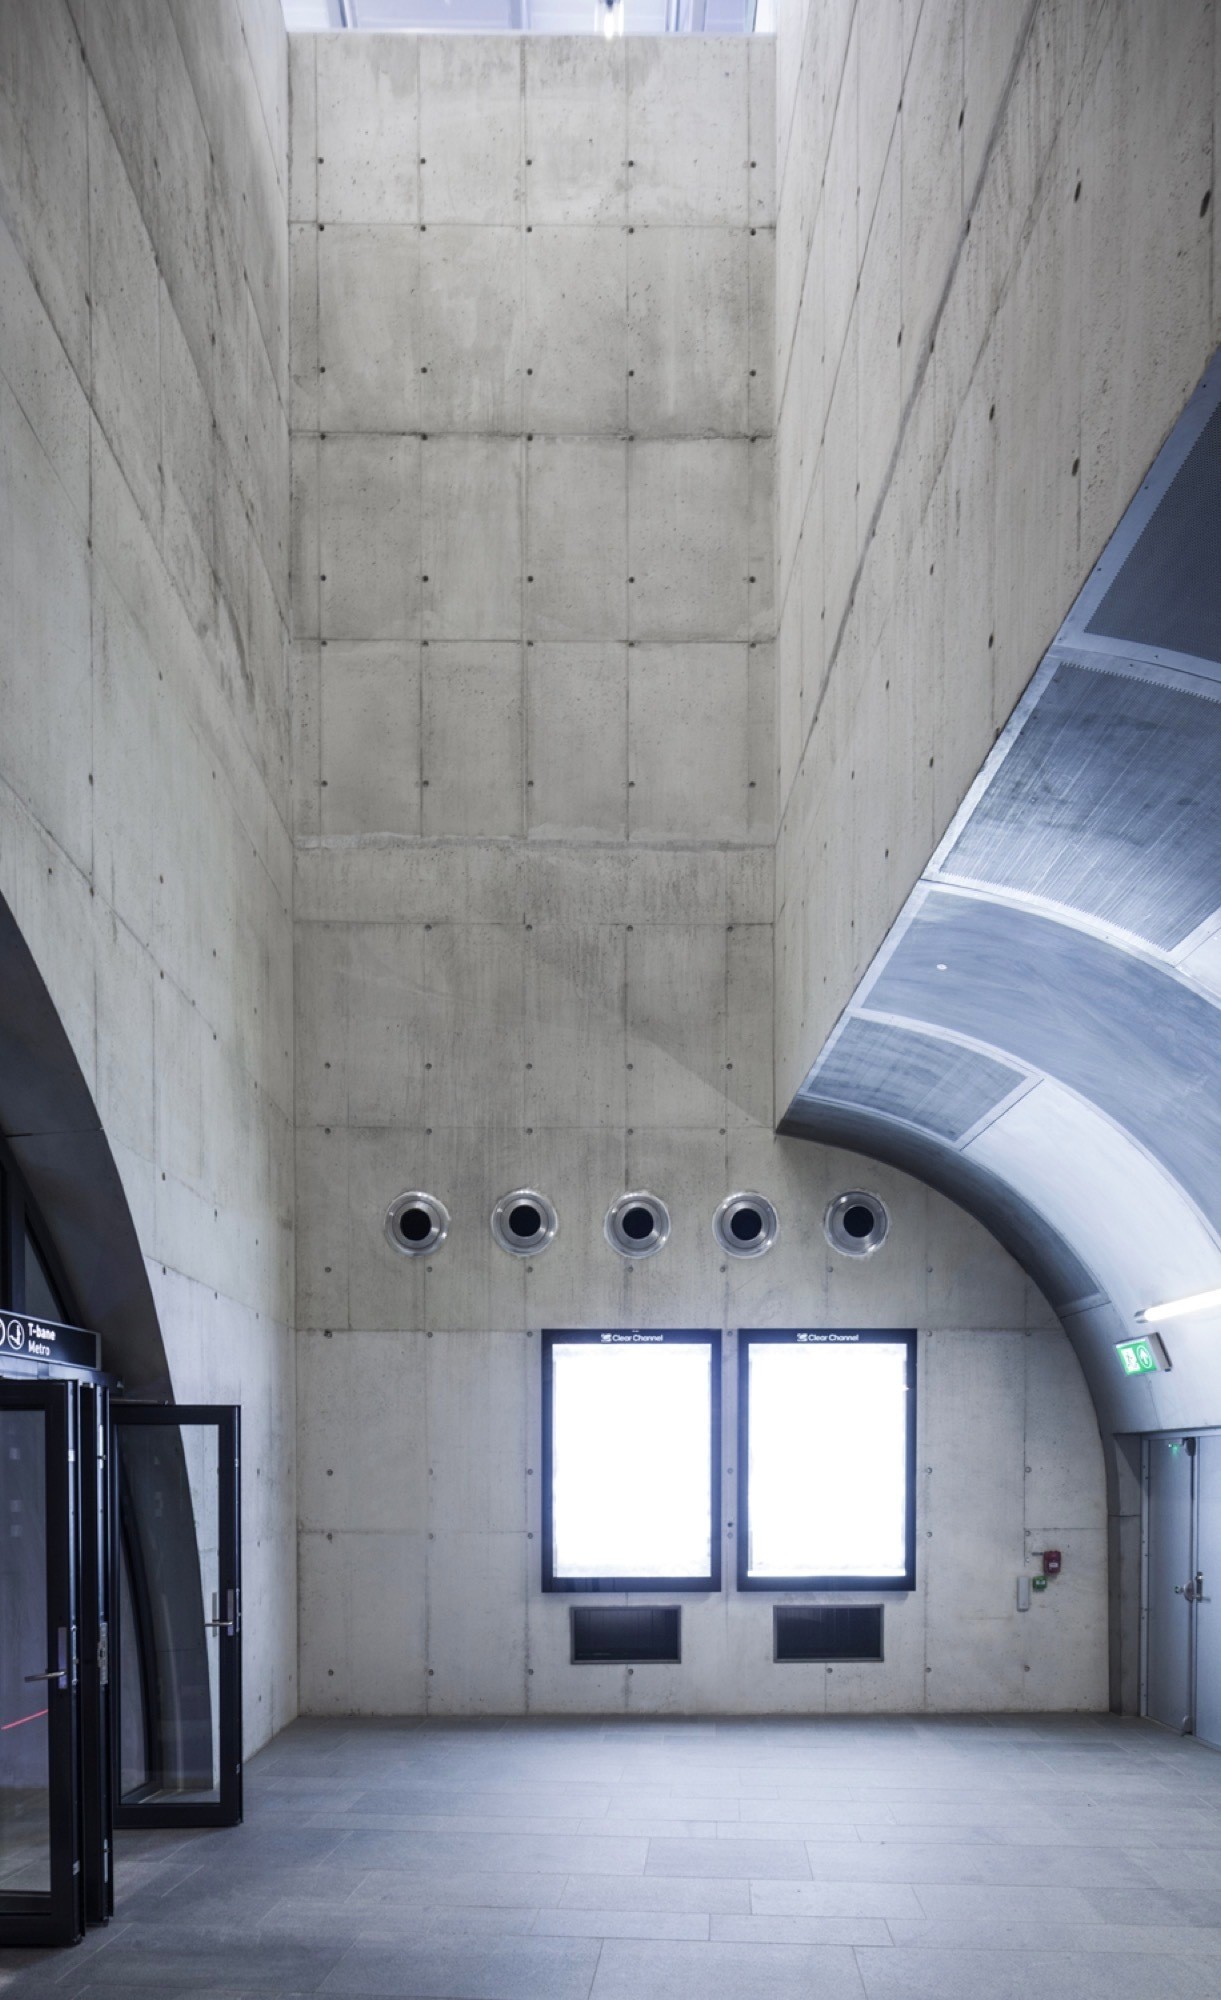 Индустриальный дизайн станции метро в Осло